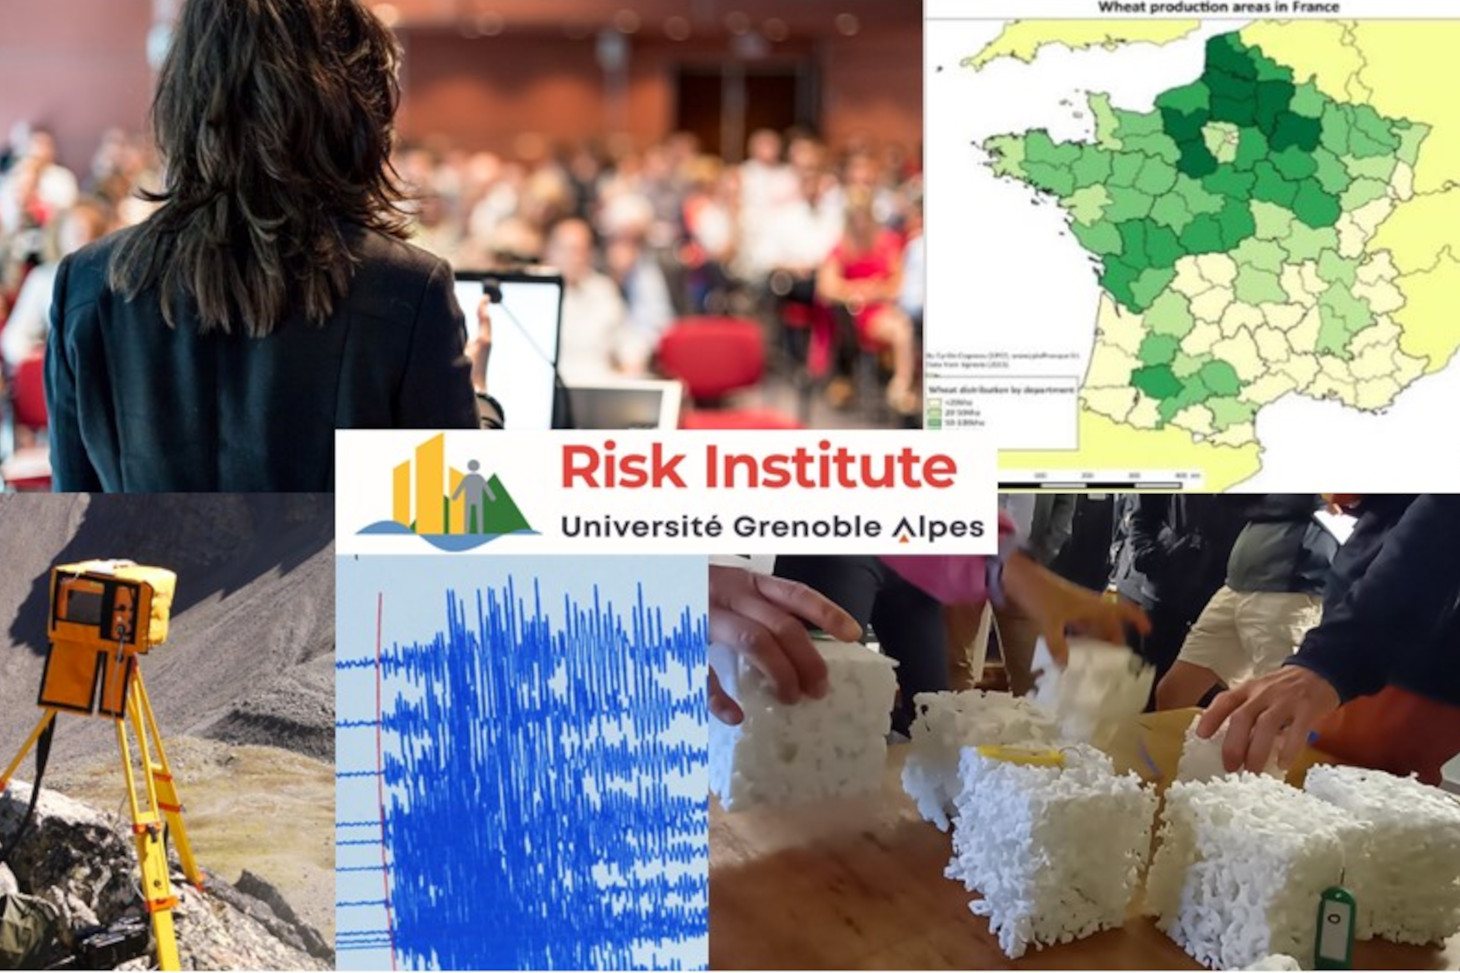 Le RISK Institute project de l'Université Grenoble Alpes (France)